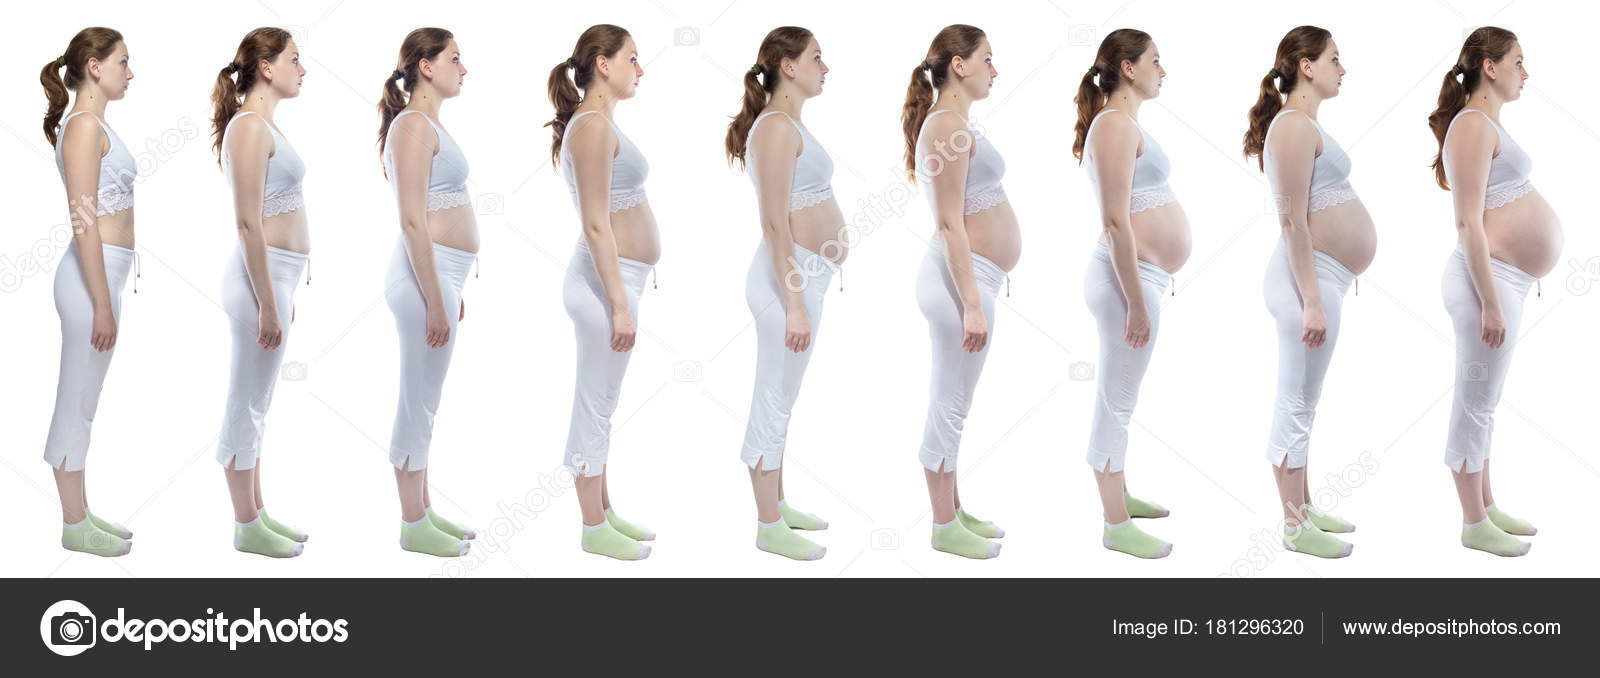 грудь при беременности фото до и во время беременности фото 19